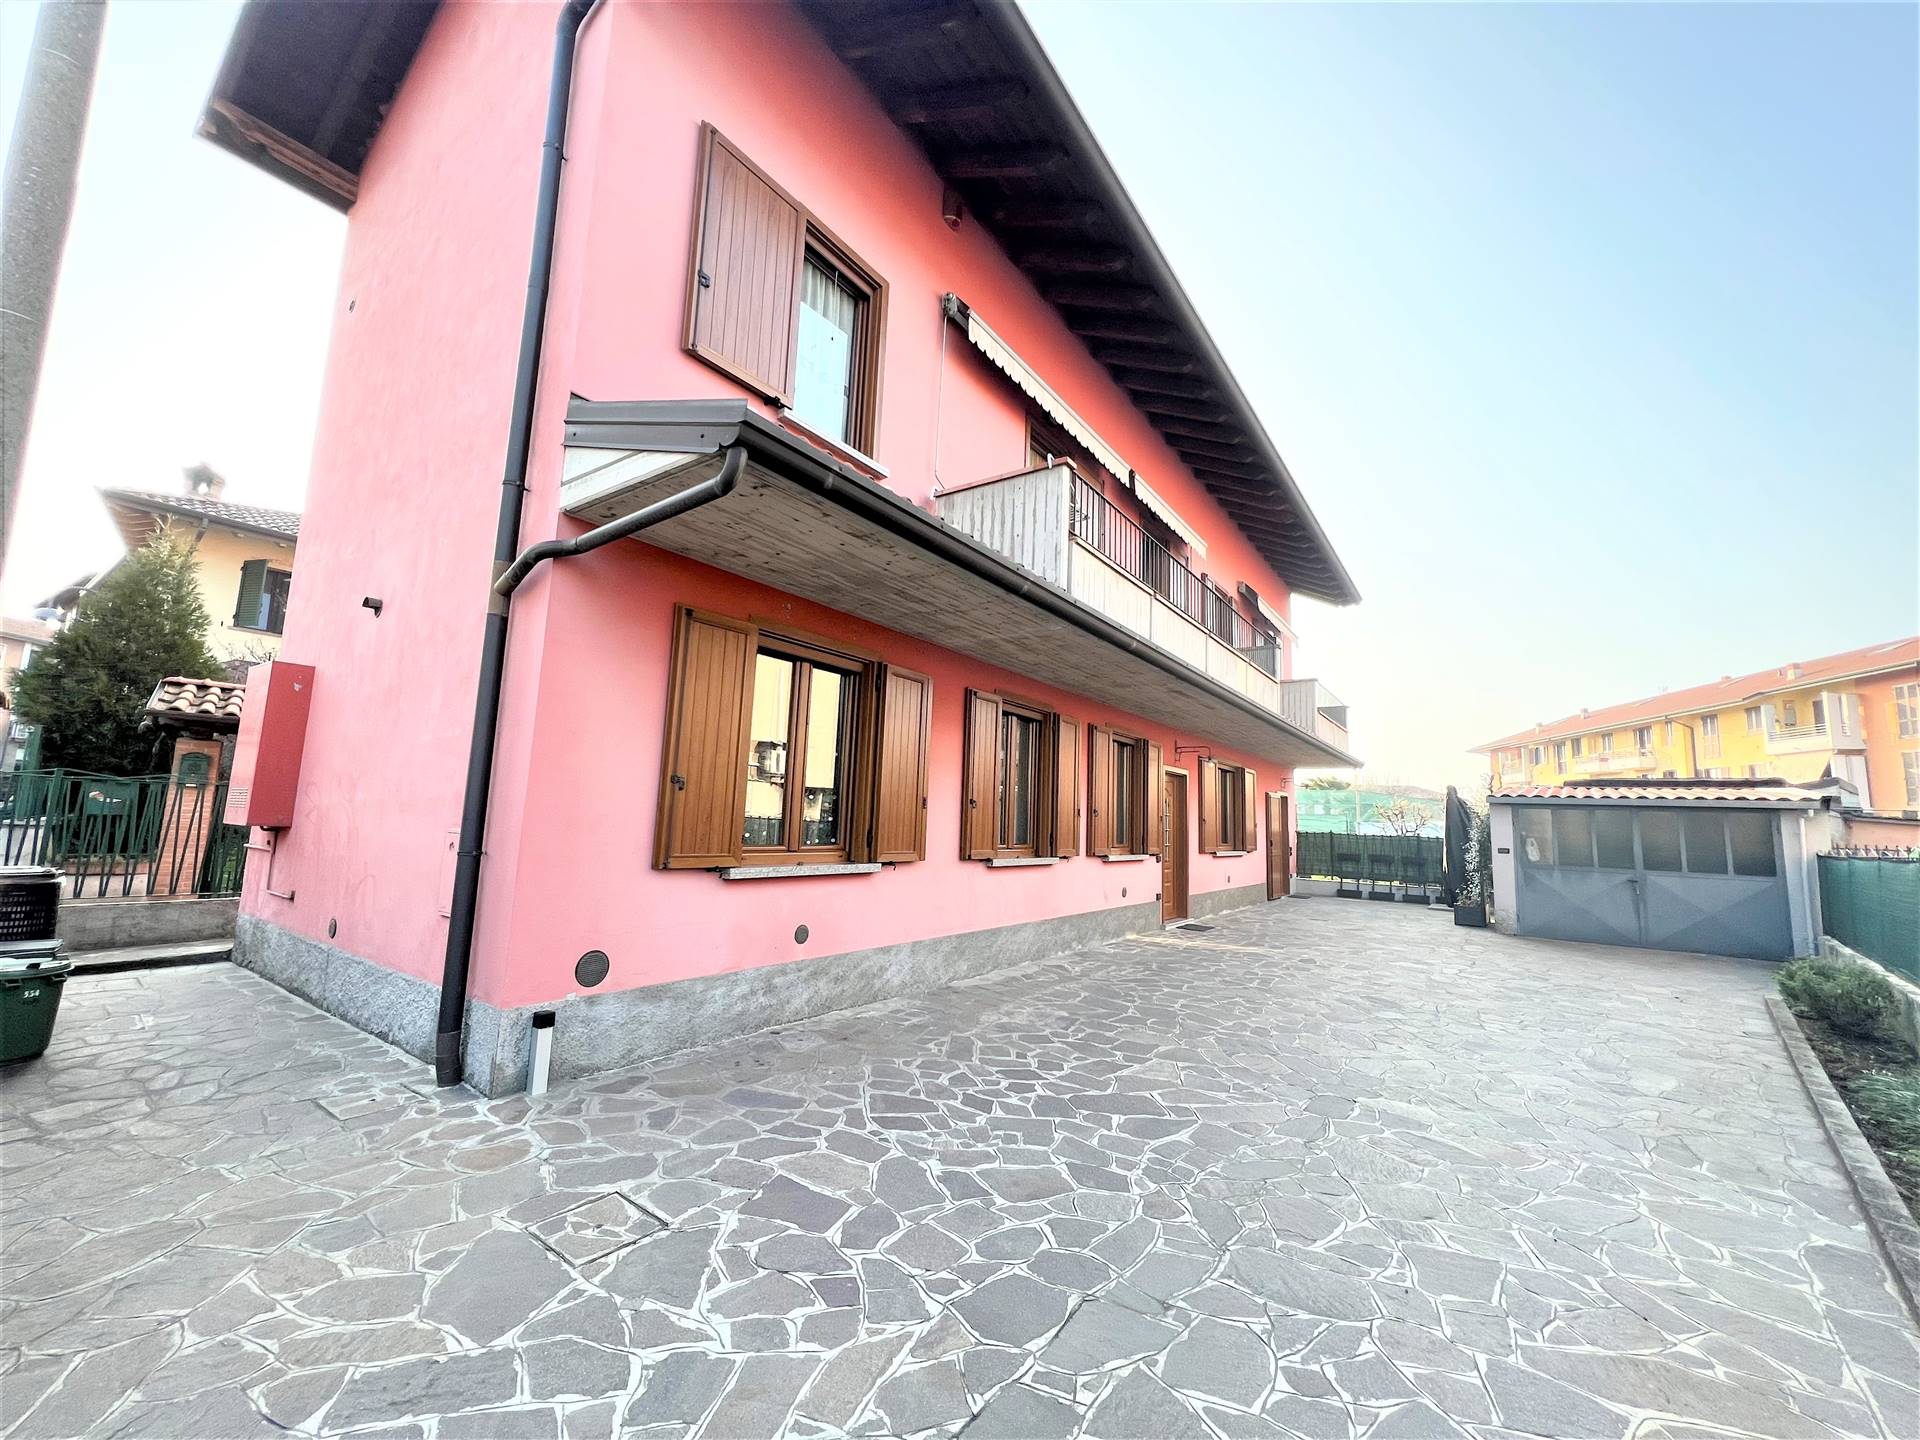 Villa in vendita a Osio Sopra, 6 locali, prezzo € 280.000 | PortaleAgenzieImmobiliari.it